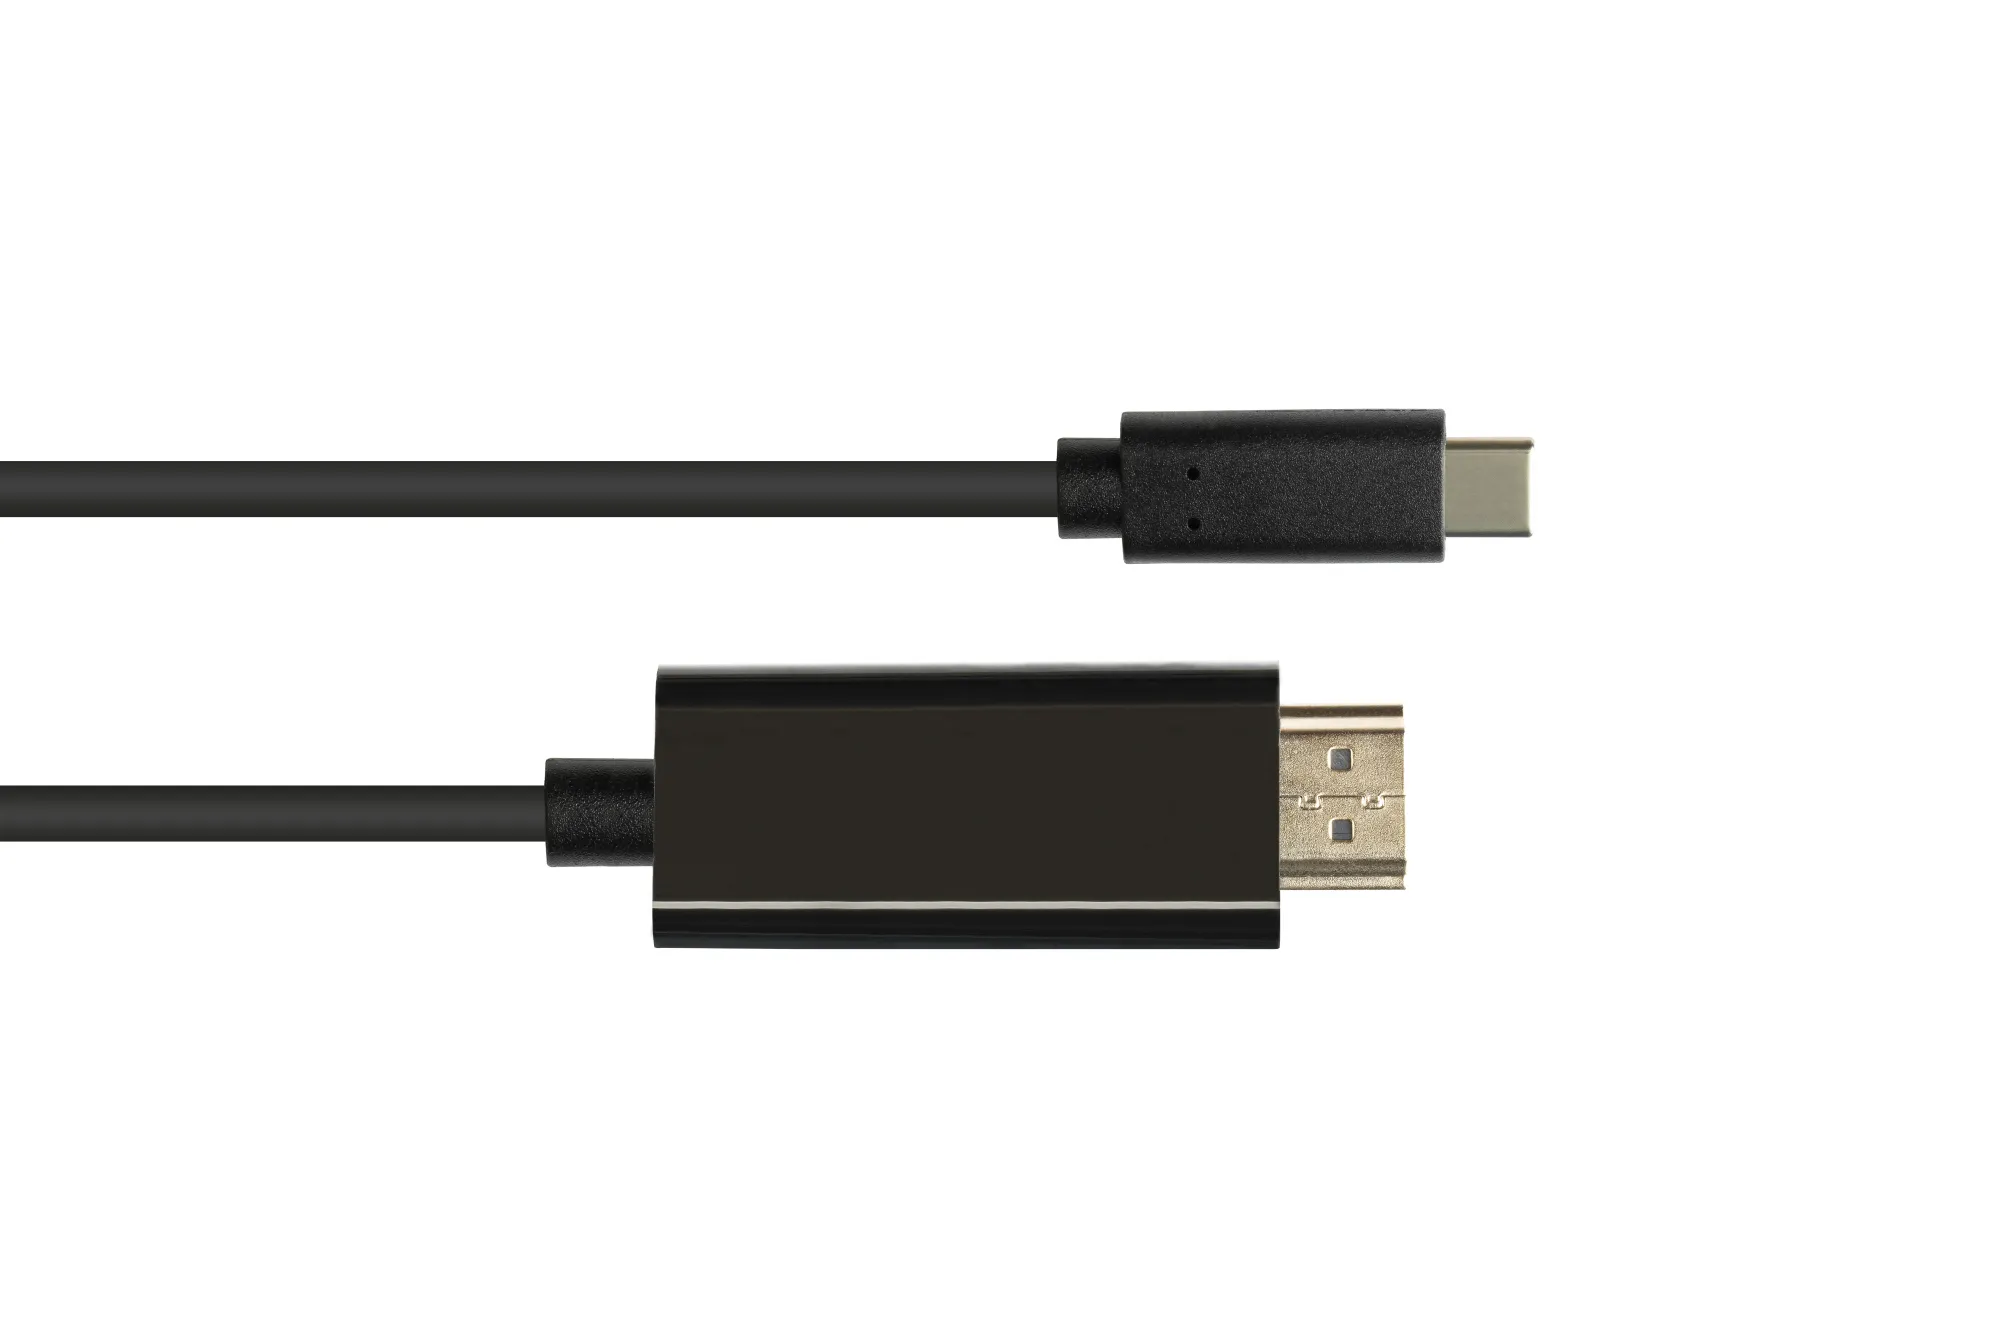 Adapterkabel USB-C™ Stecker an HDMI 2.0 Stecker, 4K / UHD @60Hz, CU, schwarz, 1m, Good Connections®